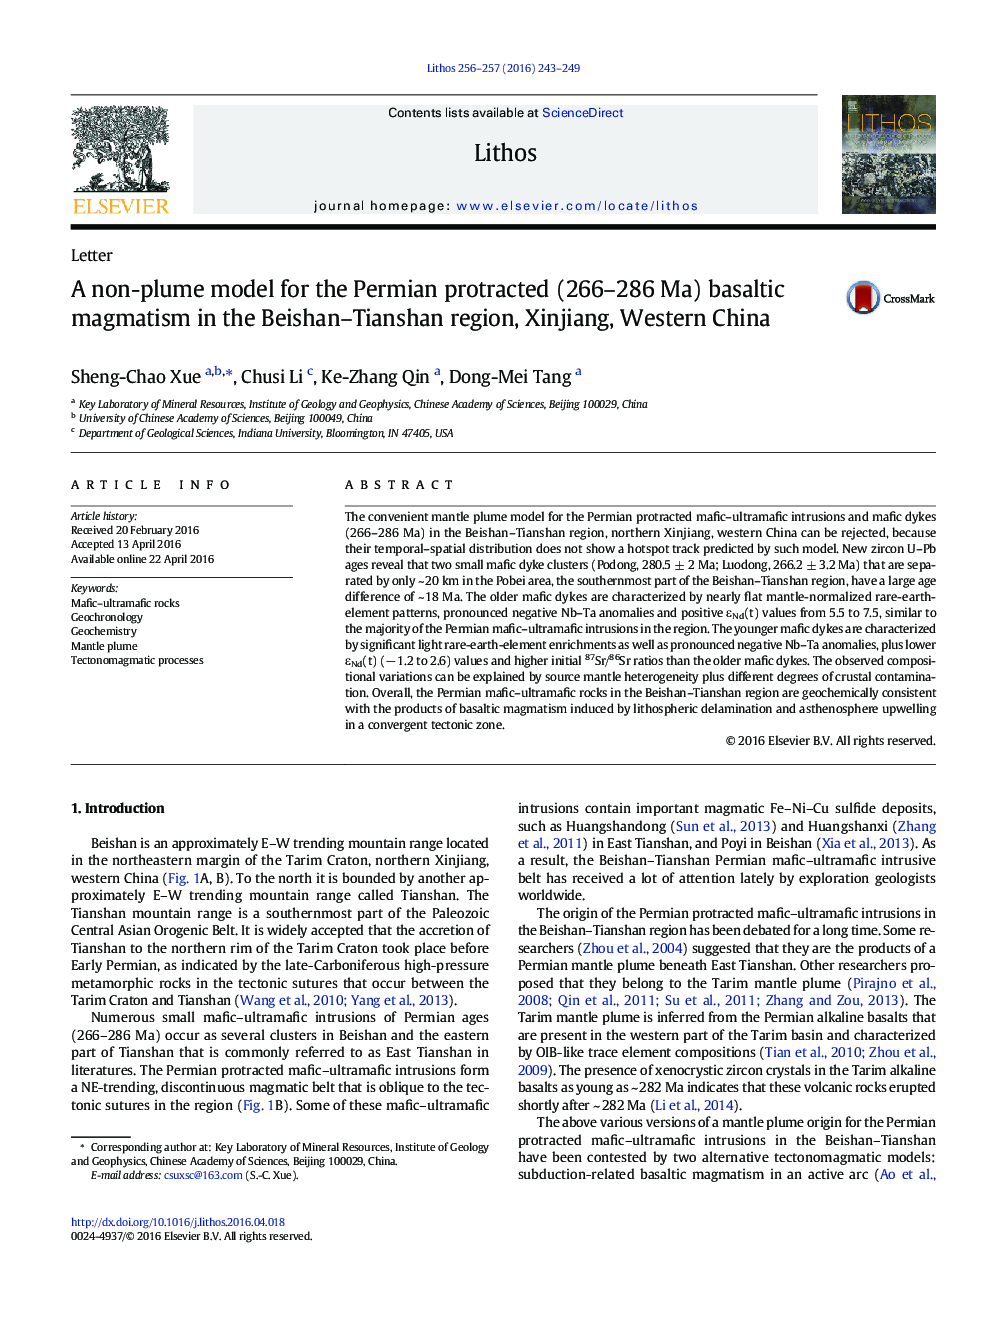 یک مدل غیرفعال برای ماگماتیسم بازالتیک طولانی مدت (266-286 مگا) پرمین در منطقه Beishan-Tianshan، Xinjiang، China Western